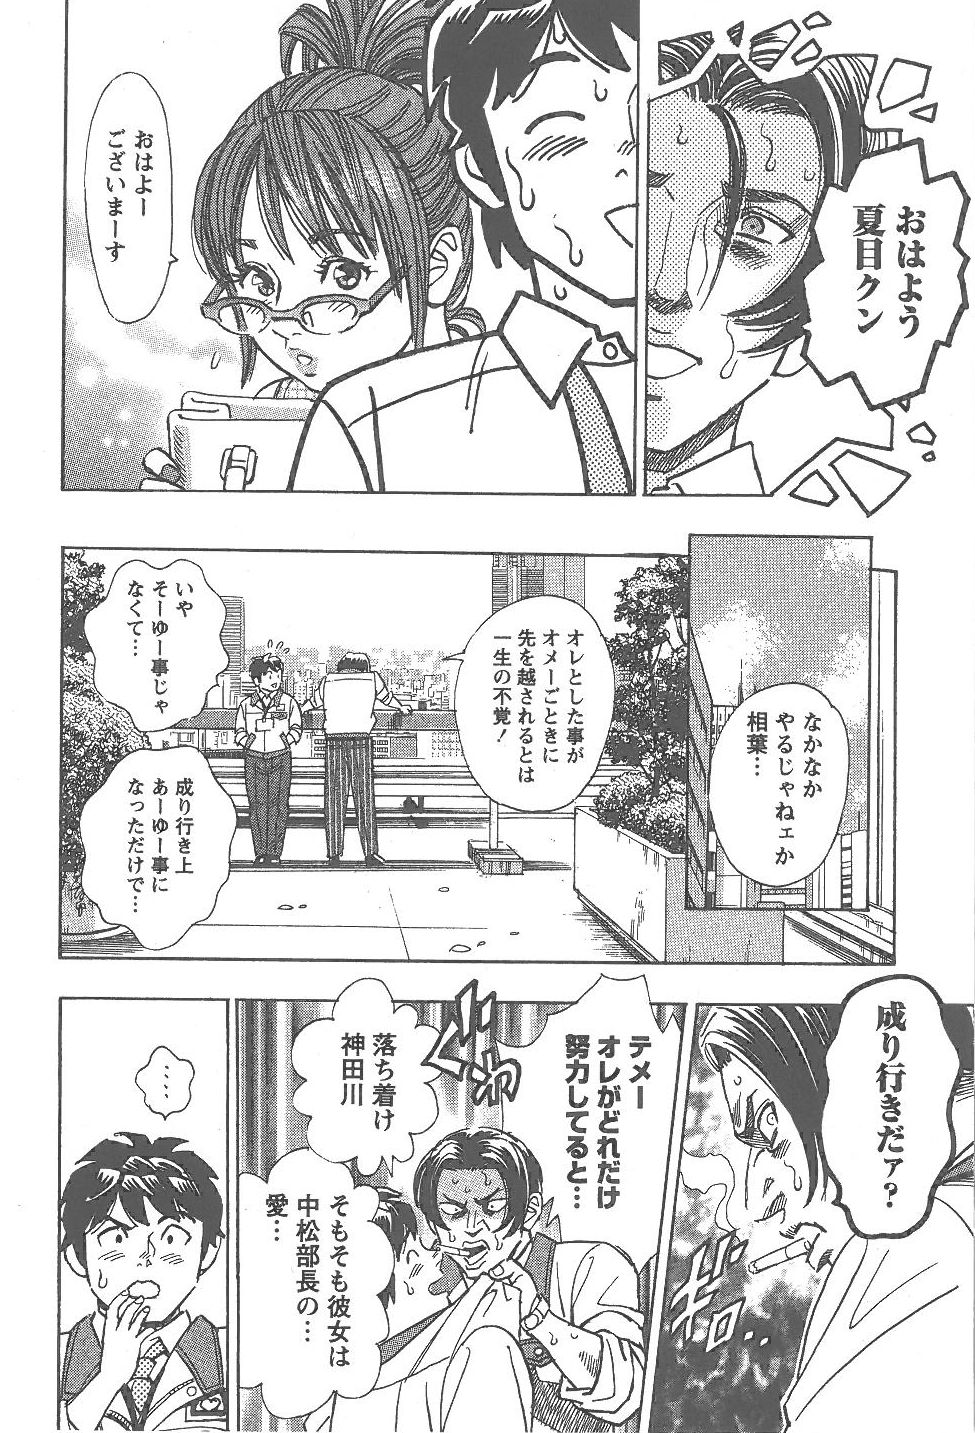 [Tomizawa Jun] Amakuchi Knight 02 page 11 full